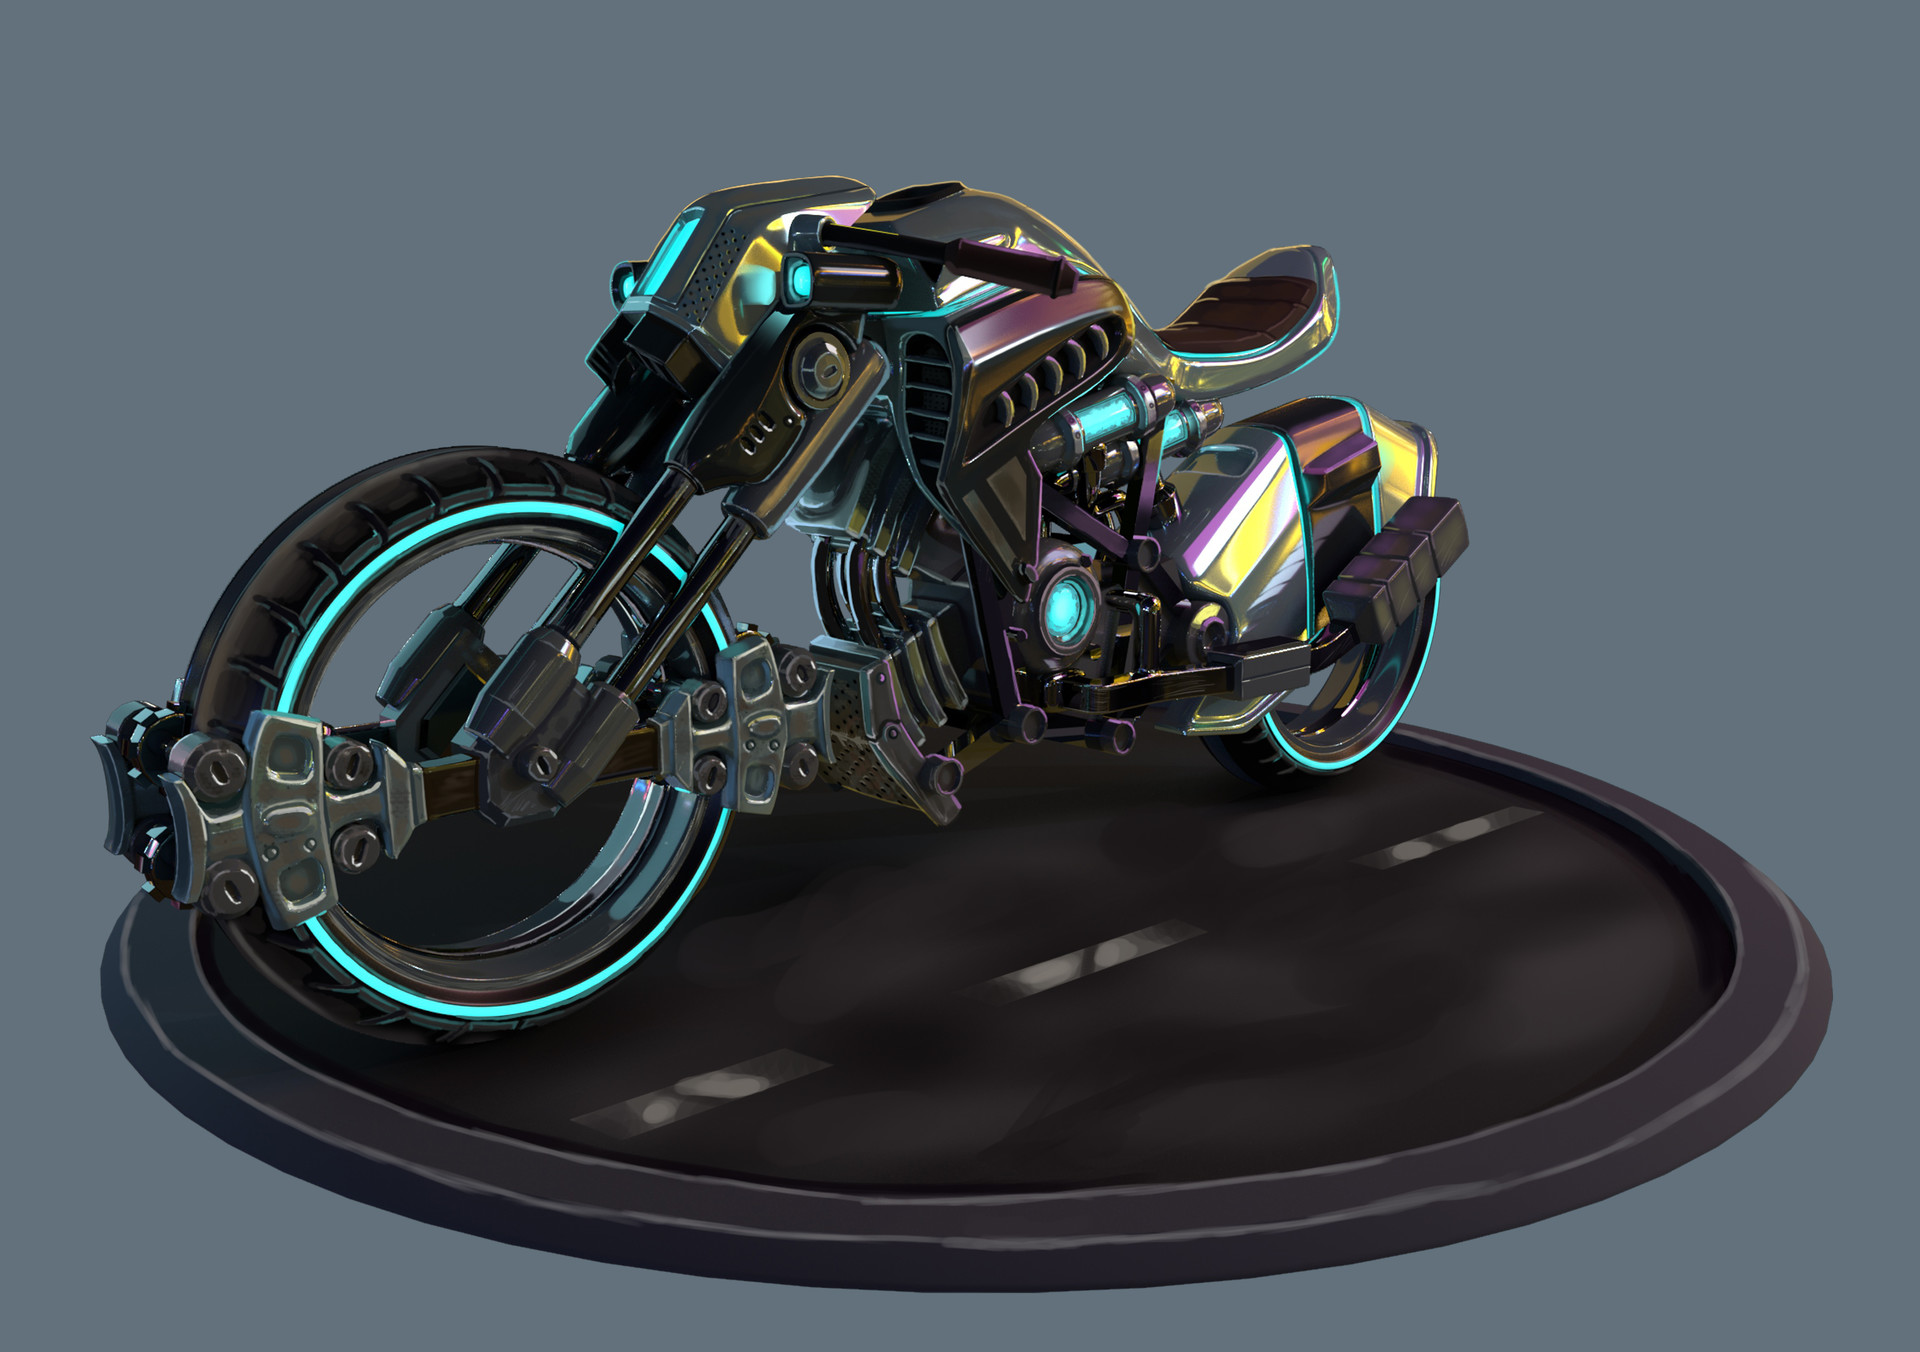 Cyberpunk motorcycle art фото 2